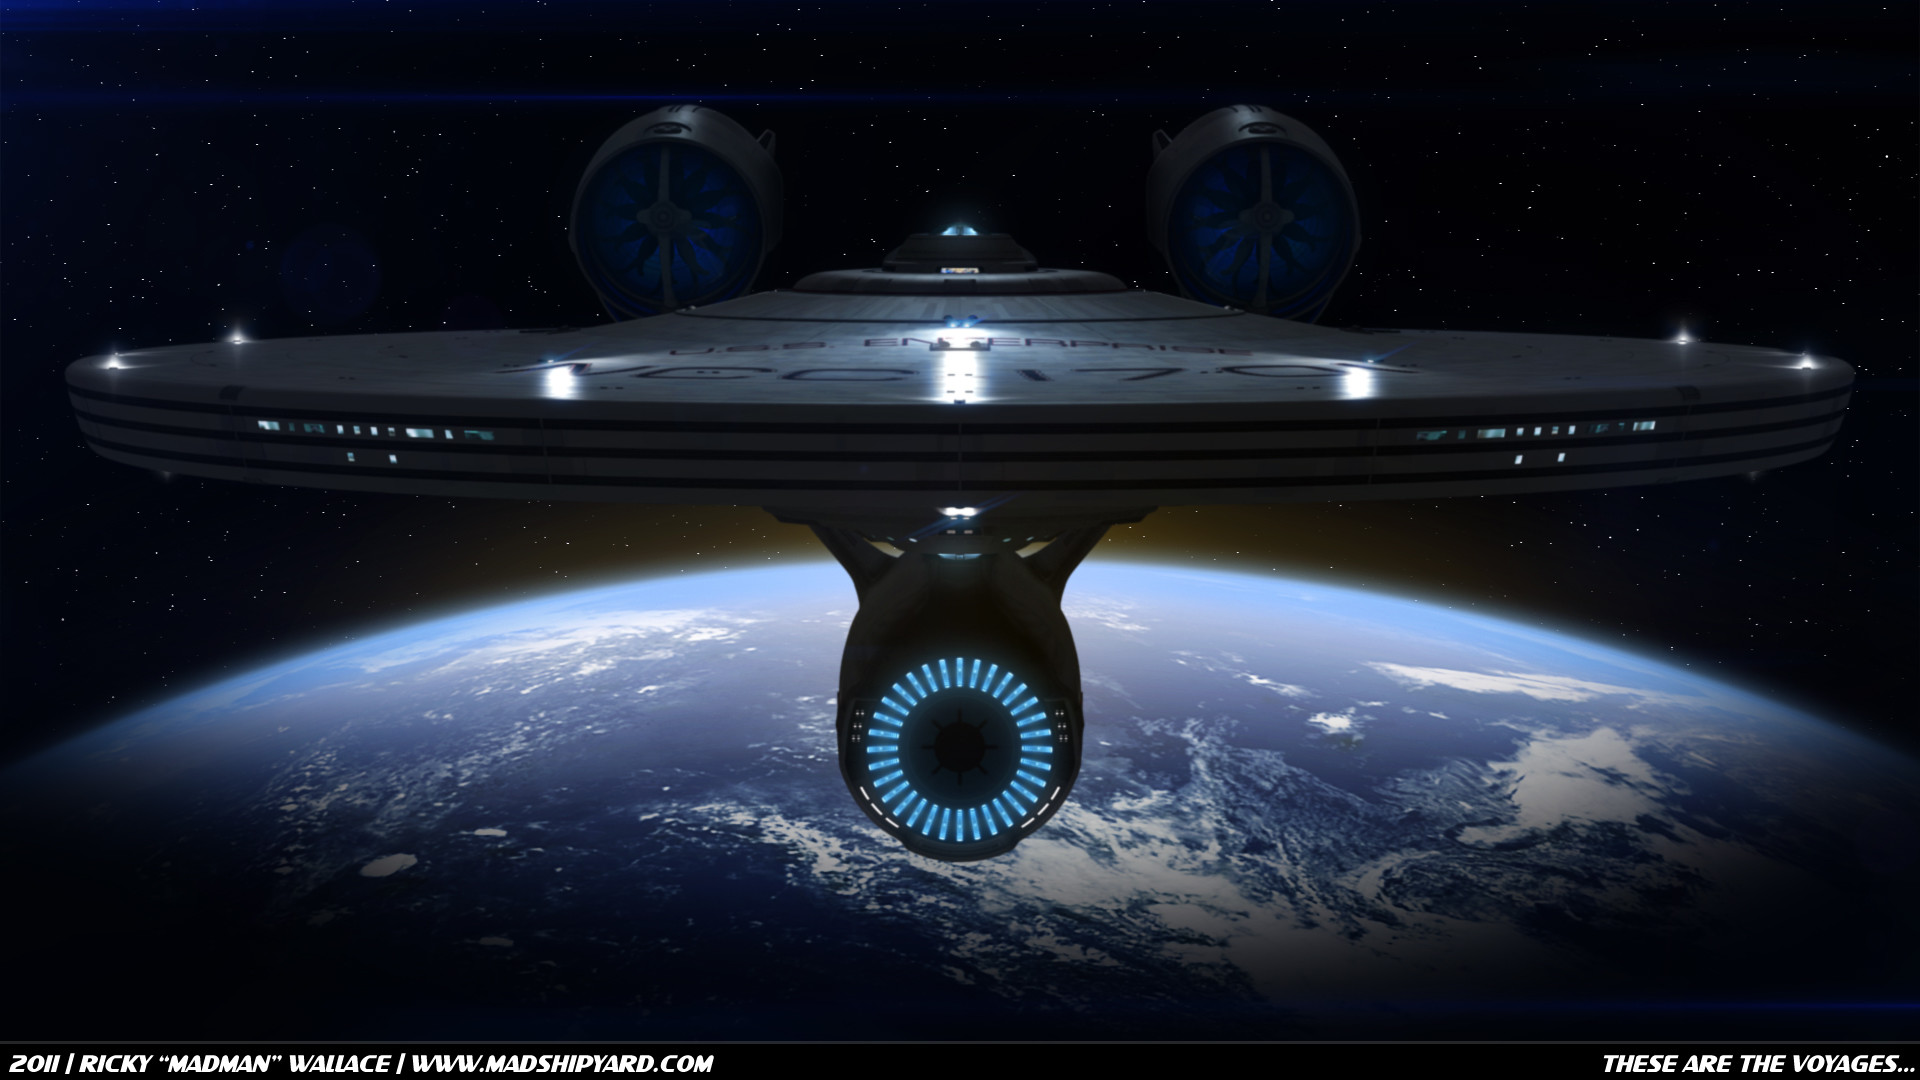 1920x1080 78+ images about Star Trek - U S S Enterprise NCC-1701 (J J